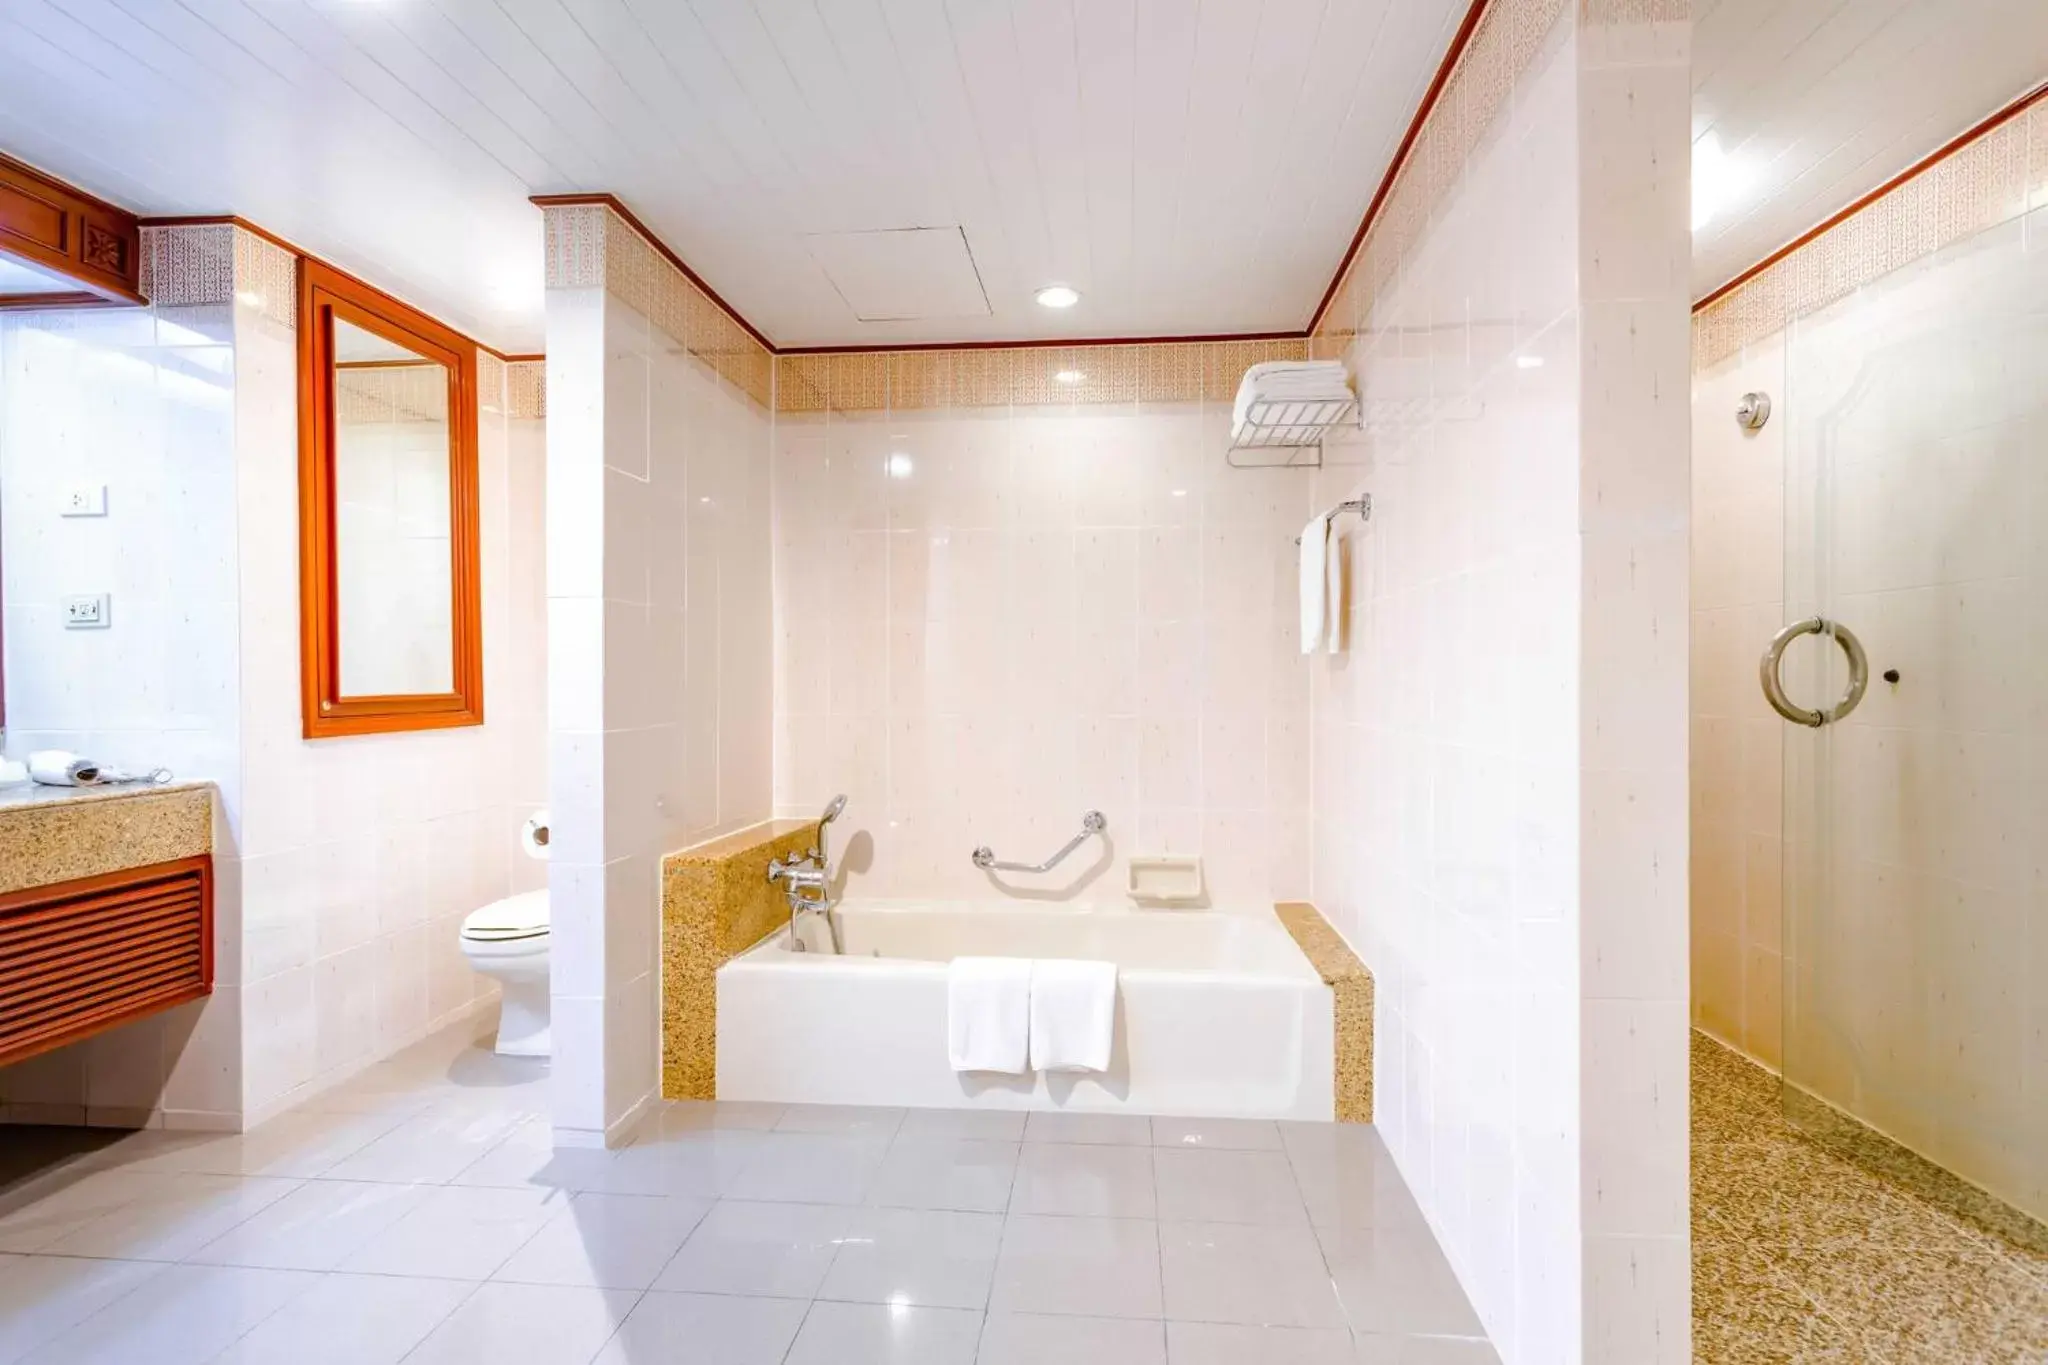 Bedroom, Bathroom in Centara Riverside Hotel Chiang Mai